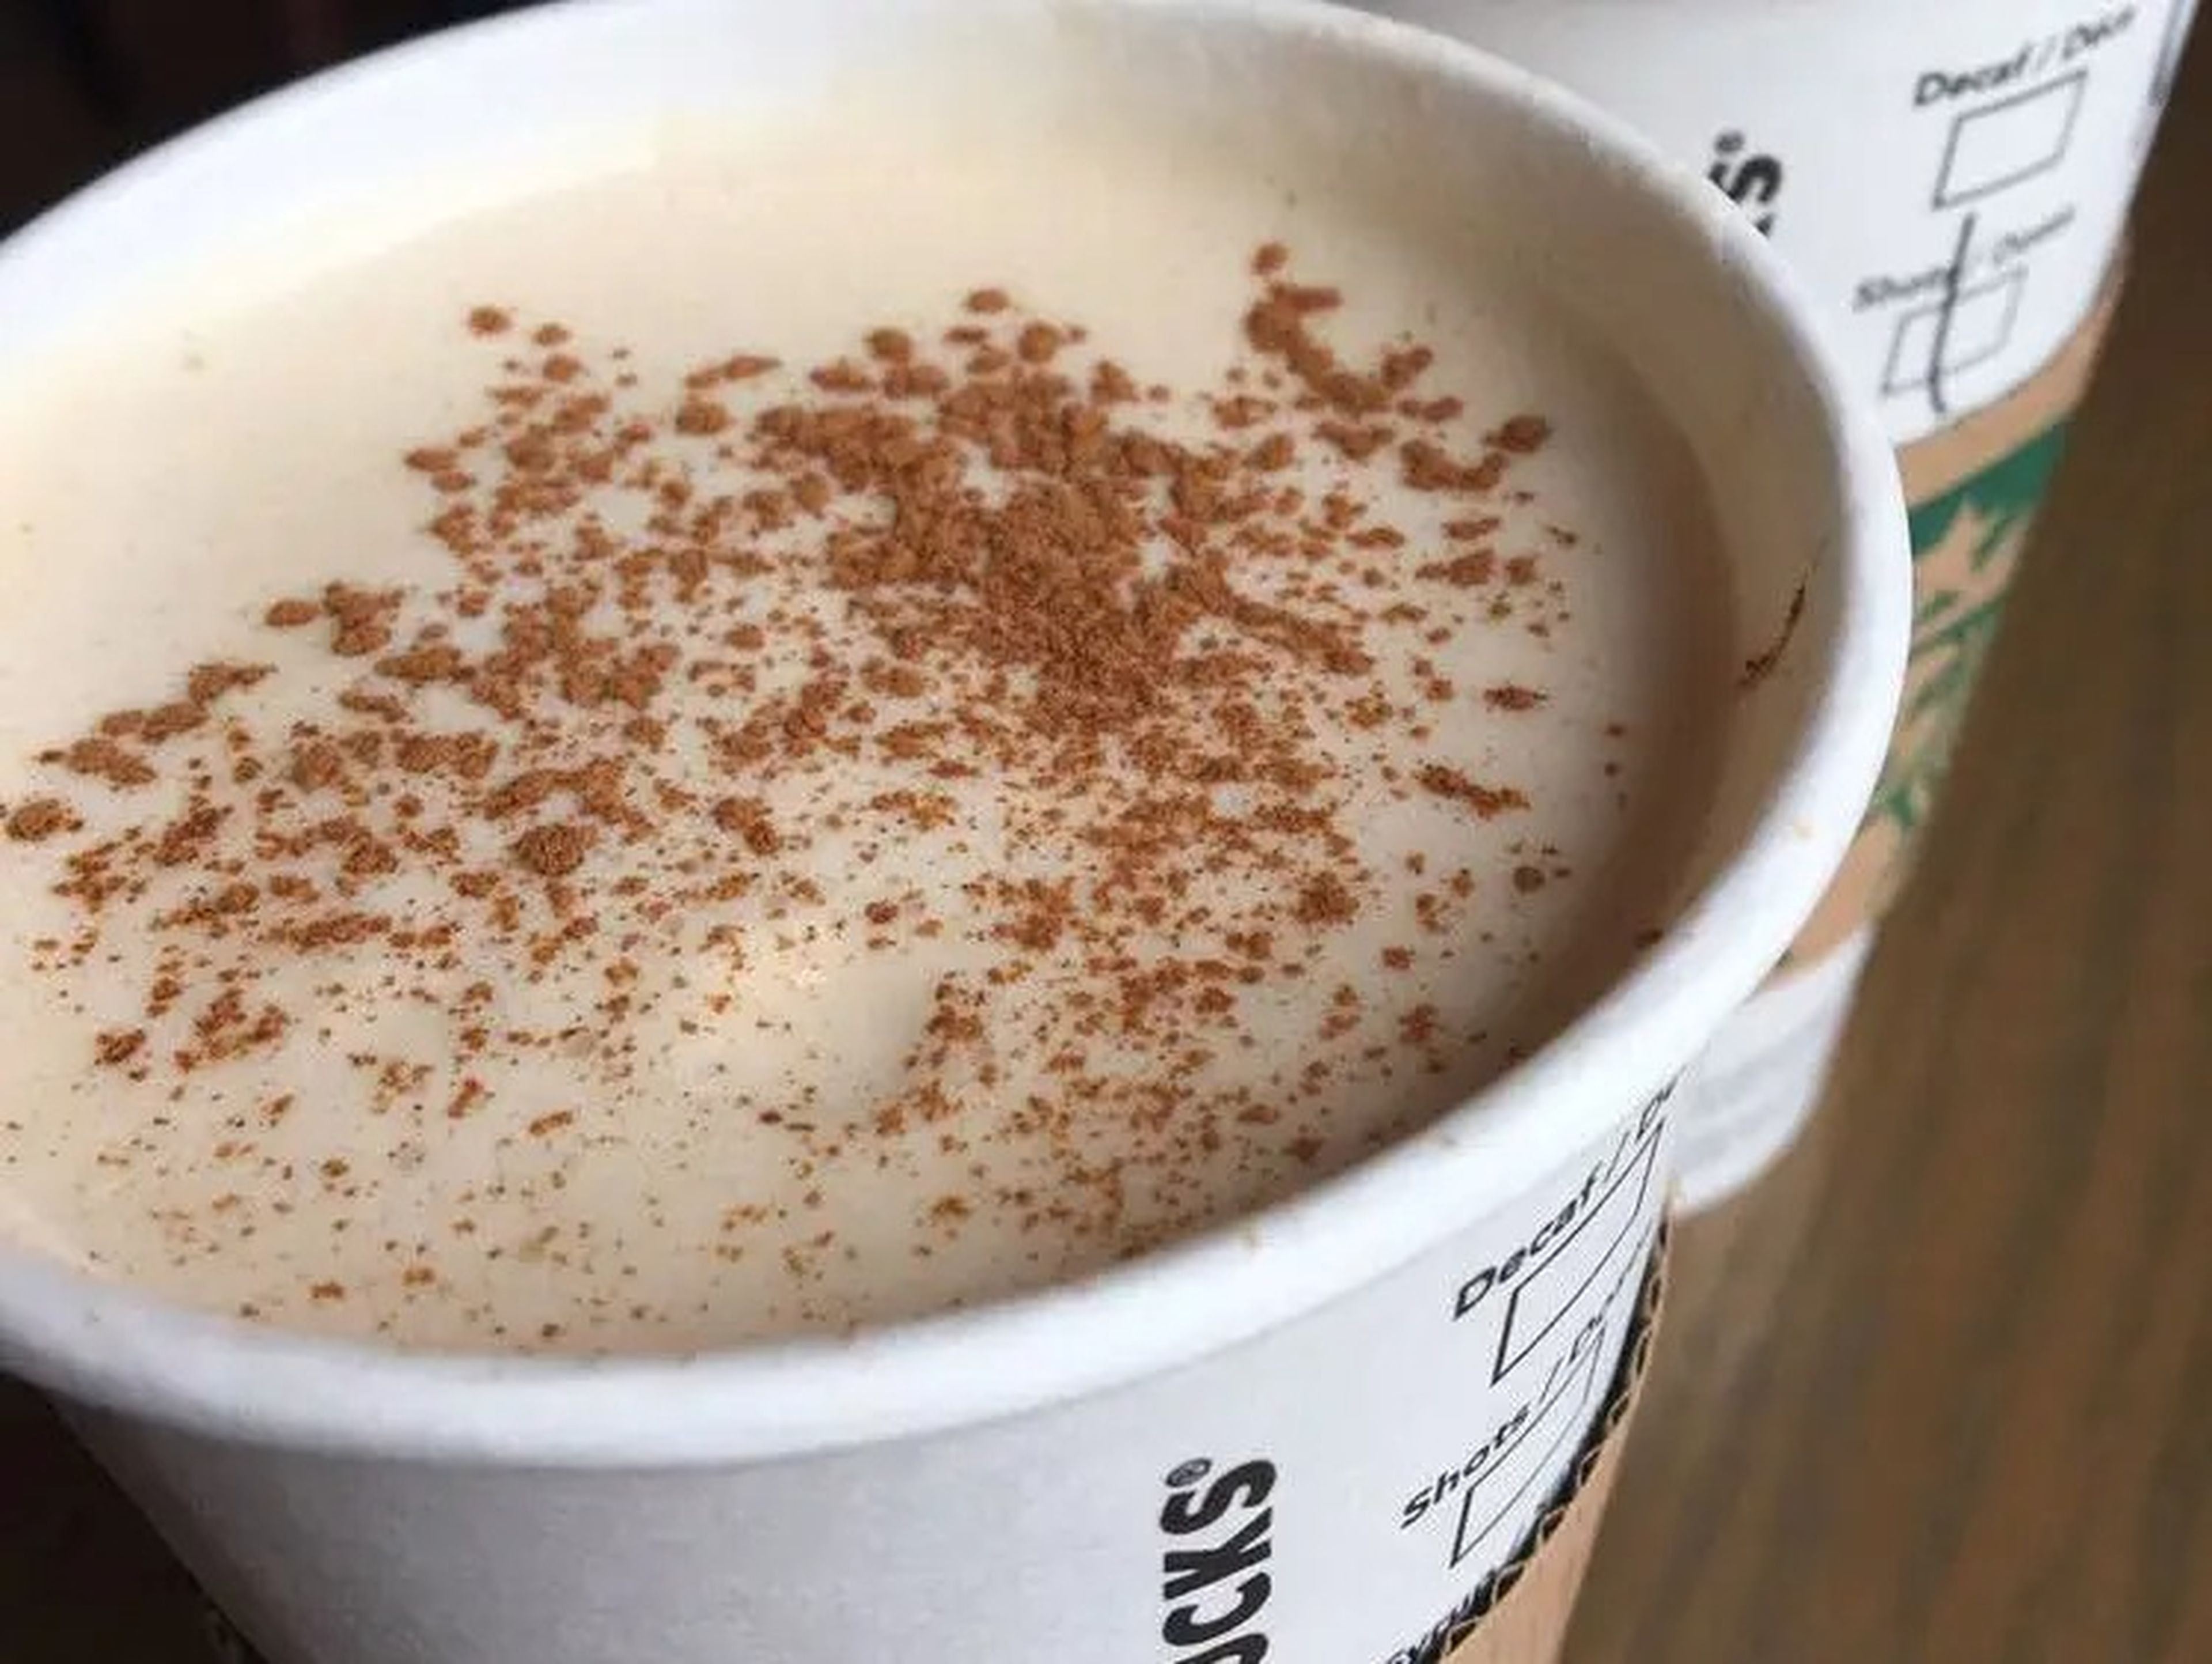 Starbucks prepara un buen chai latte, asegura Blay.